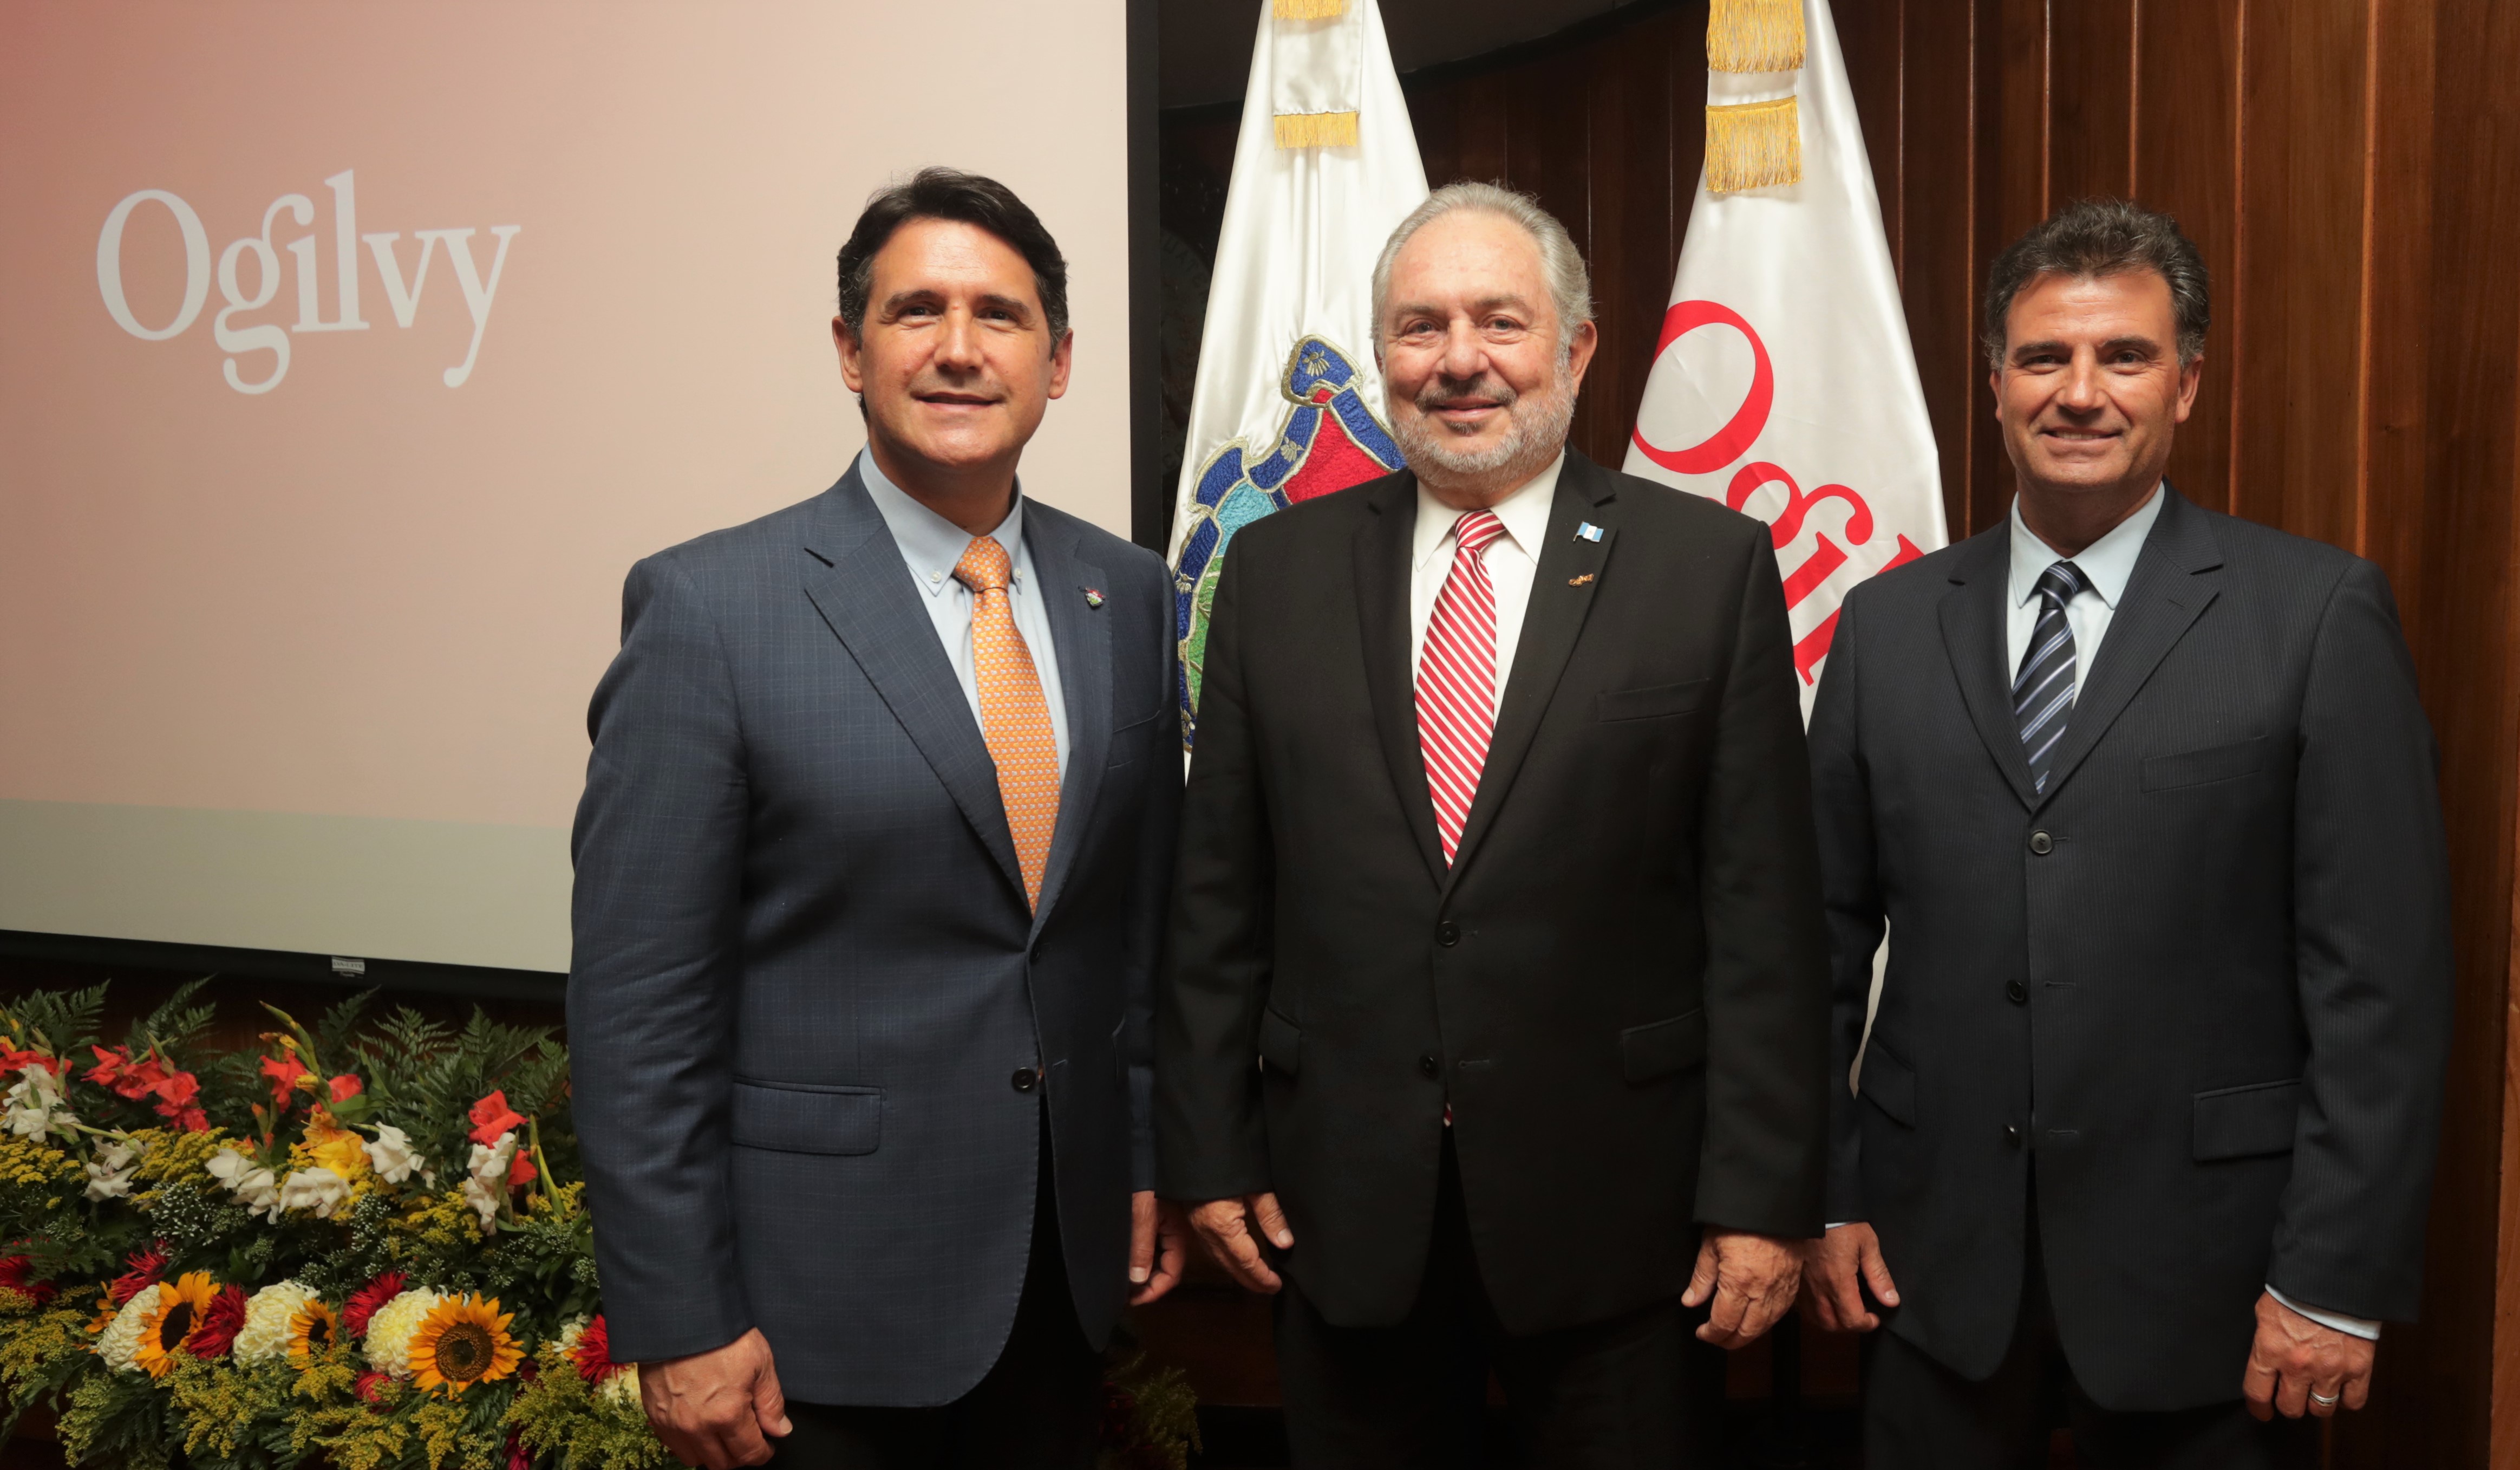  Alcalde Ricardo Quiñónez, Juan Mauricio Wurmser y Horacio Genolet, presidente de Ogilvy Latinoamérica.  (Foto Prensa Libre: Cortesía)